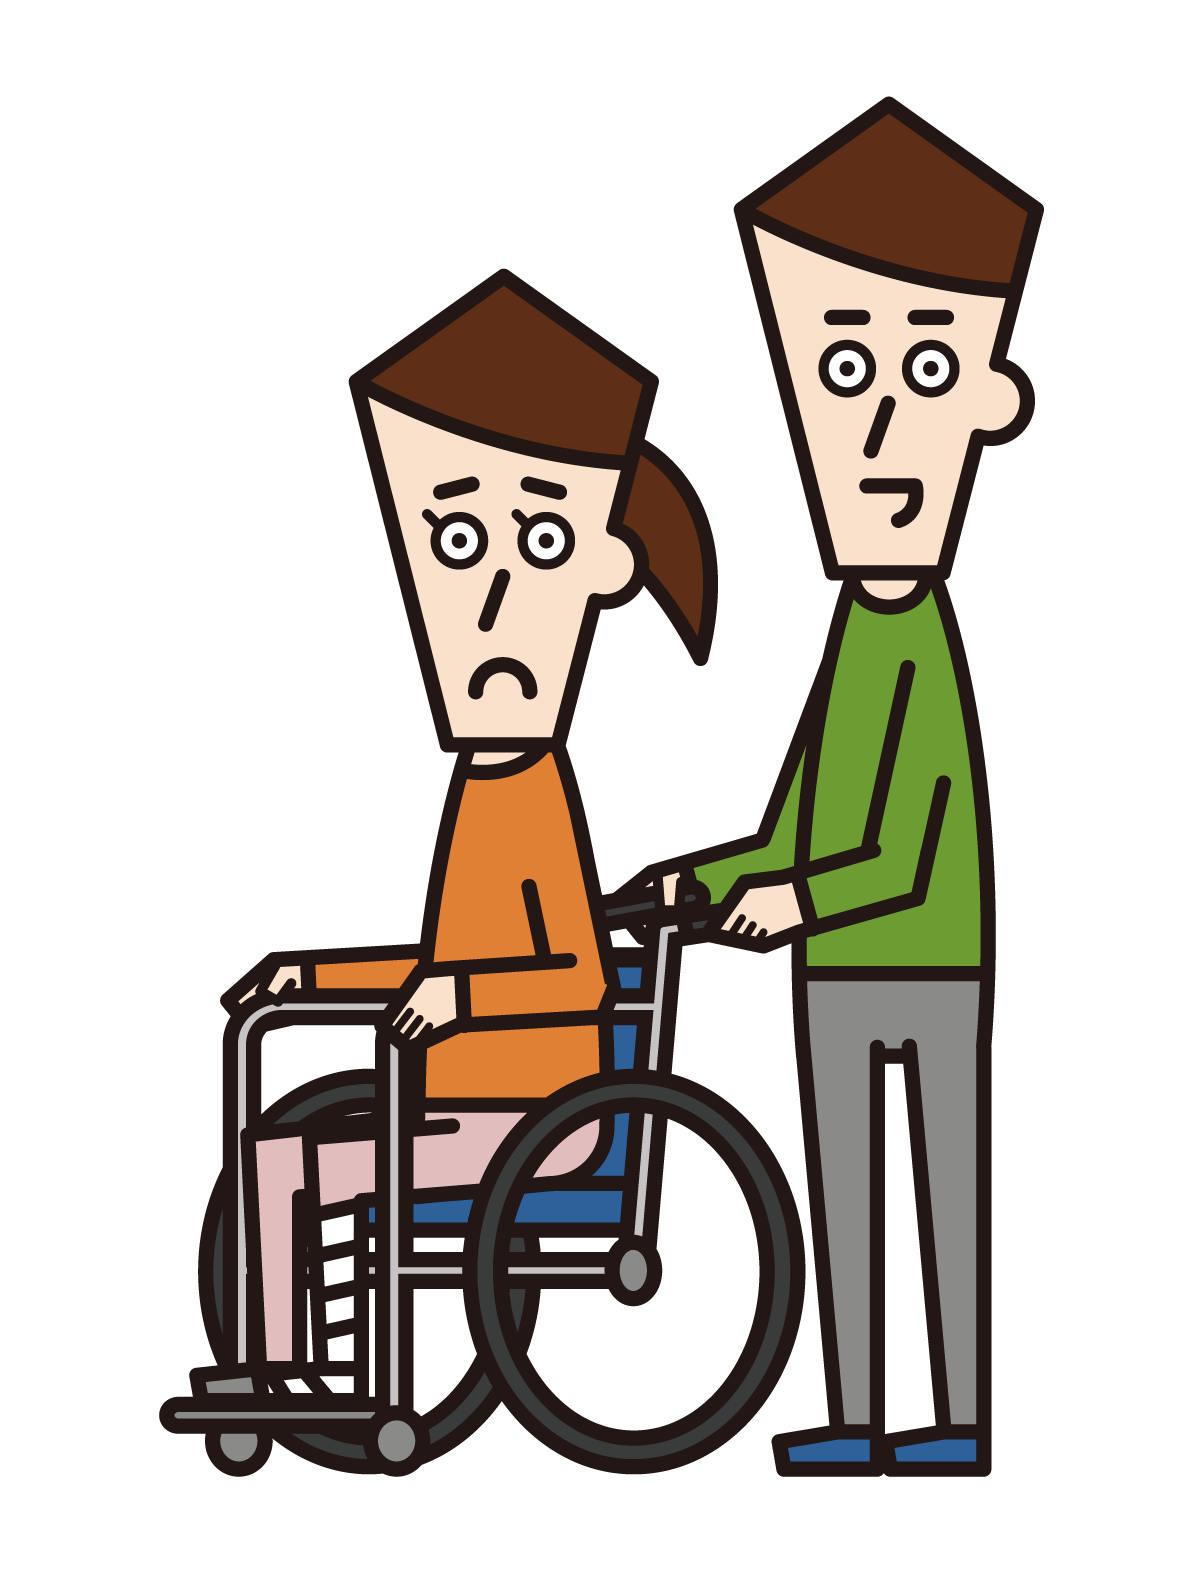 다리 골절로 휠체어에 앉아있는 사람 (여성)의 그림